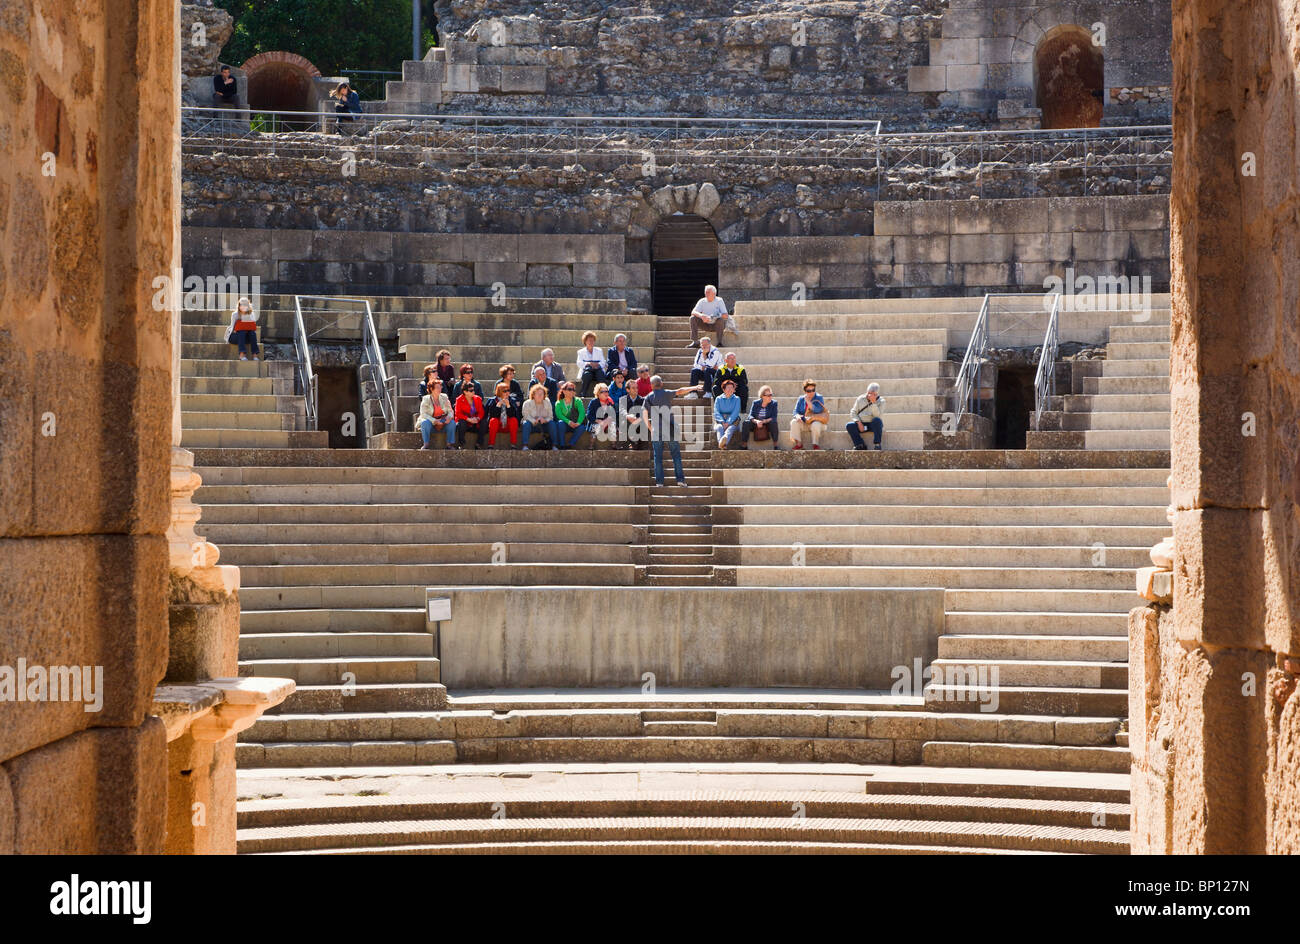 Merida, Provinz Badajoz, Spanien. Das römische Theater, in dem ersten Jahrhundert v. Chr. gebaut. Touristen genießen eine Führung und Vortrag. Stockfoto